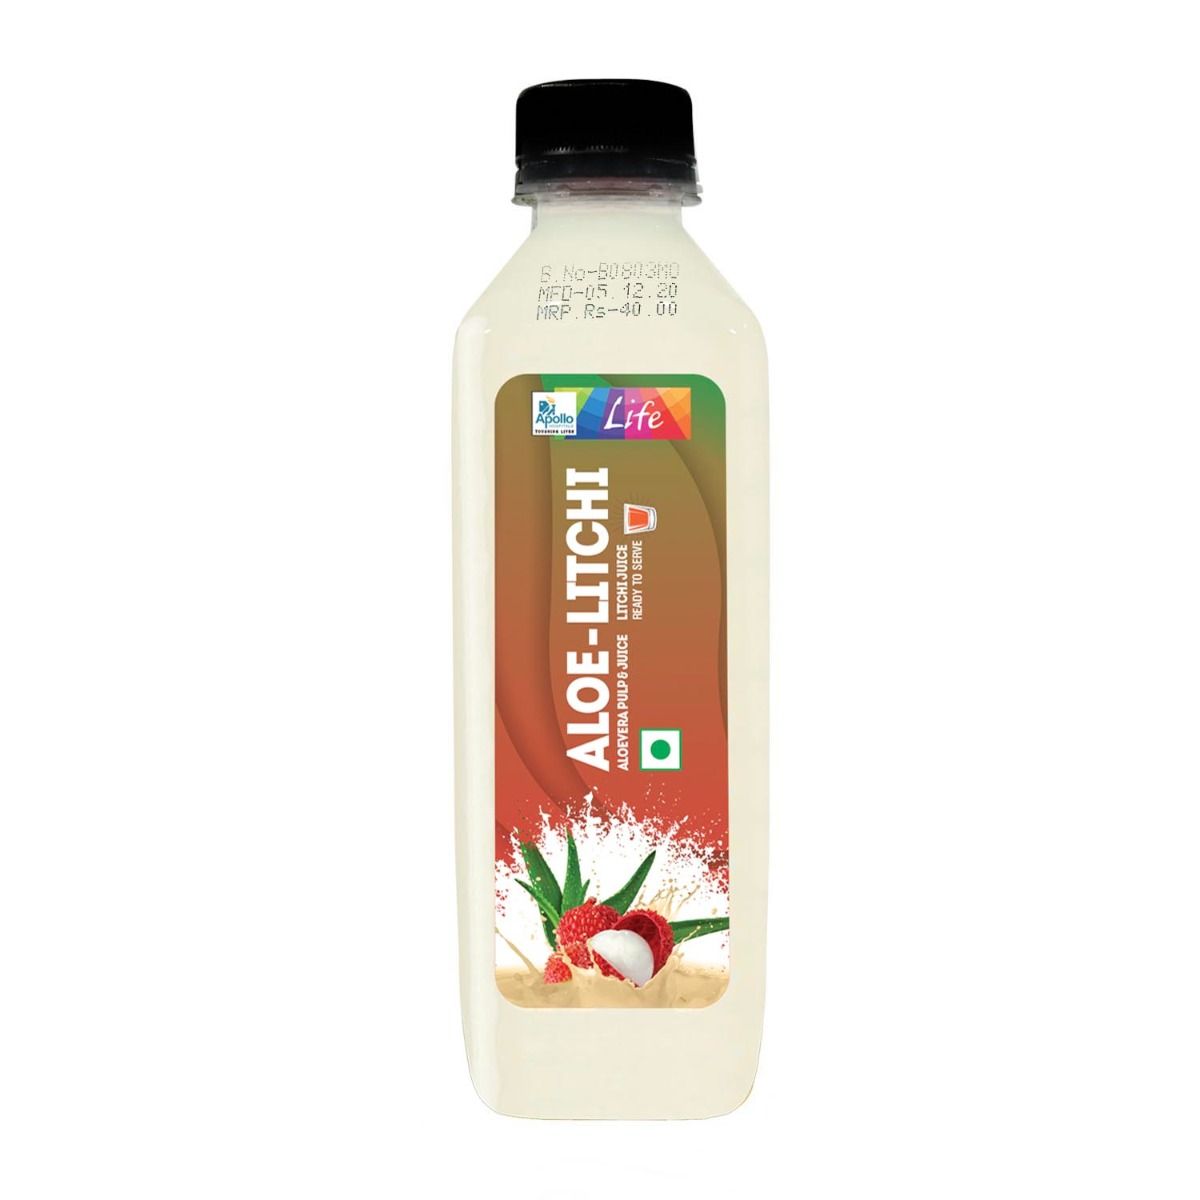 Buy Apollo Life Aloe-Litchi Juice, 300 ml Online